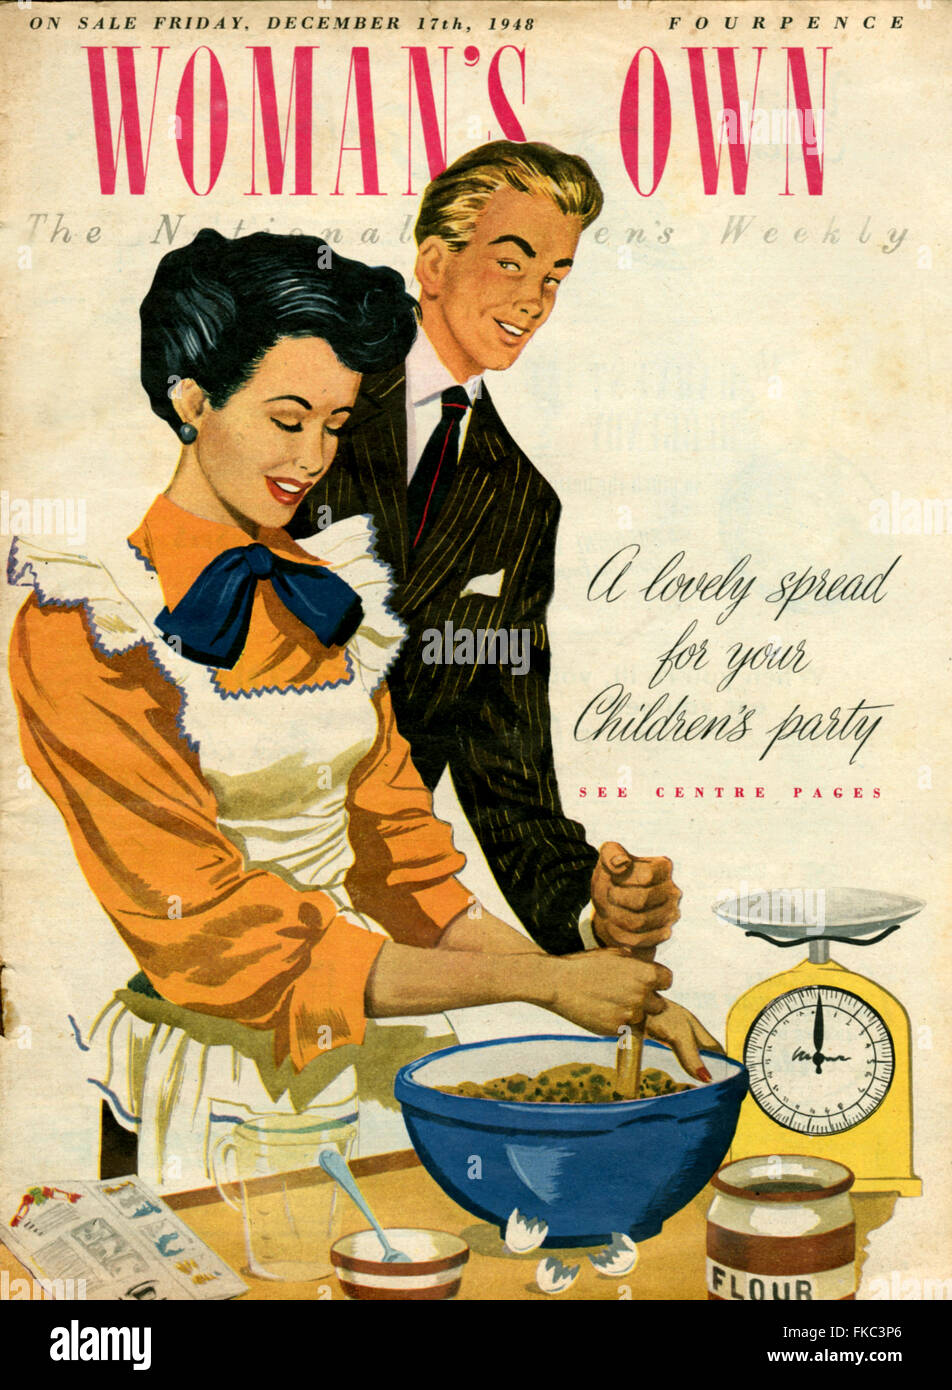 https://c8.alamy.com/comp/FKC3P6/1940s-uk-womans-own-magazine-cover-FKC3P6.jpg